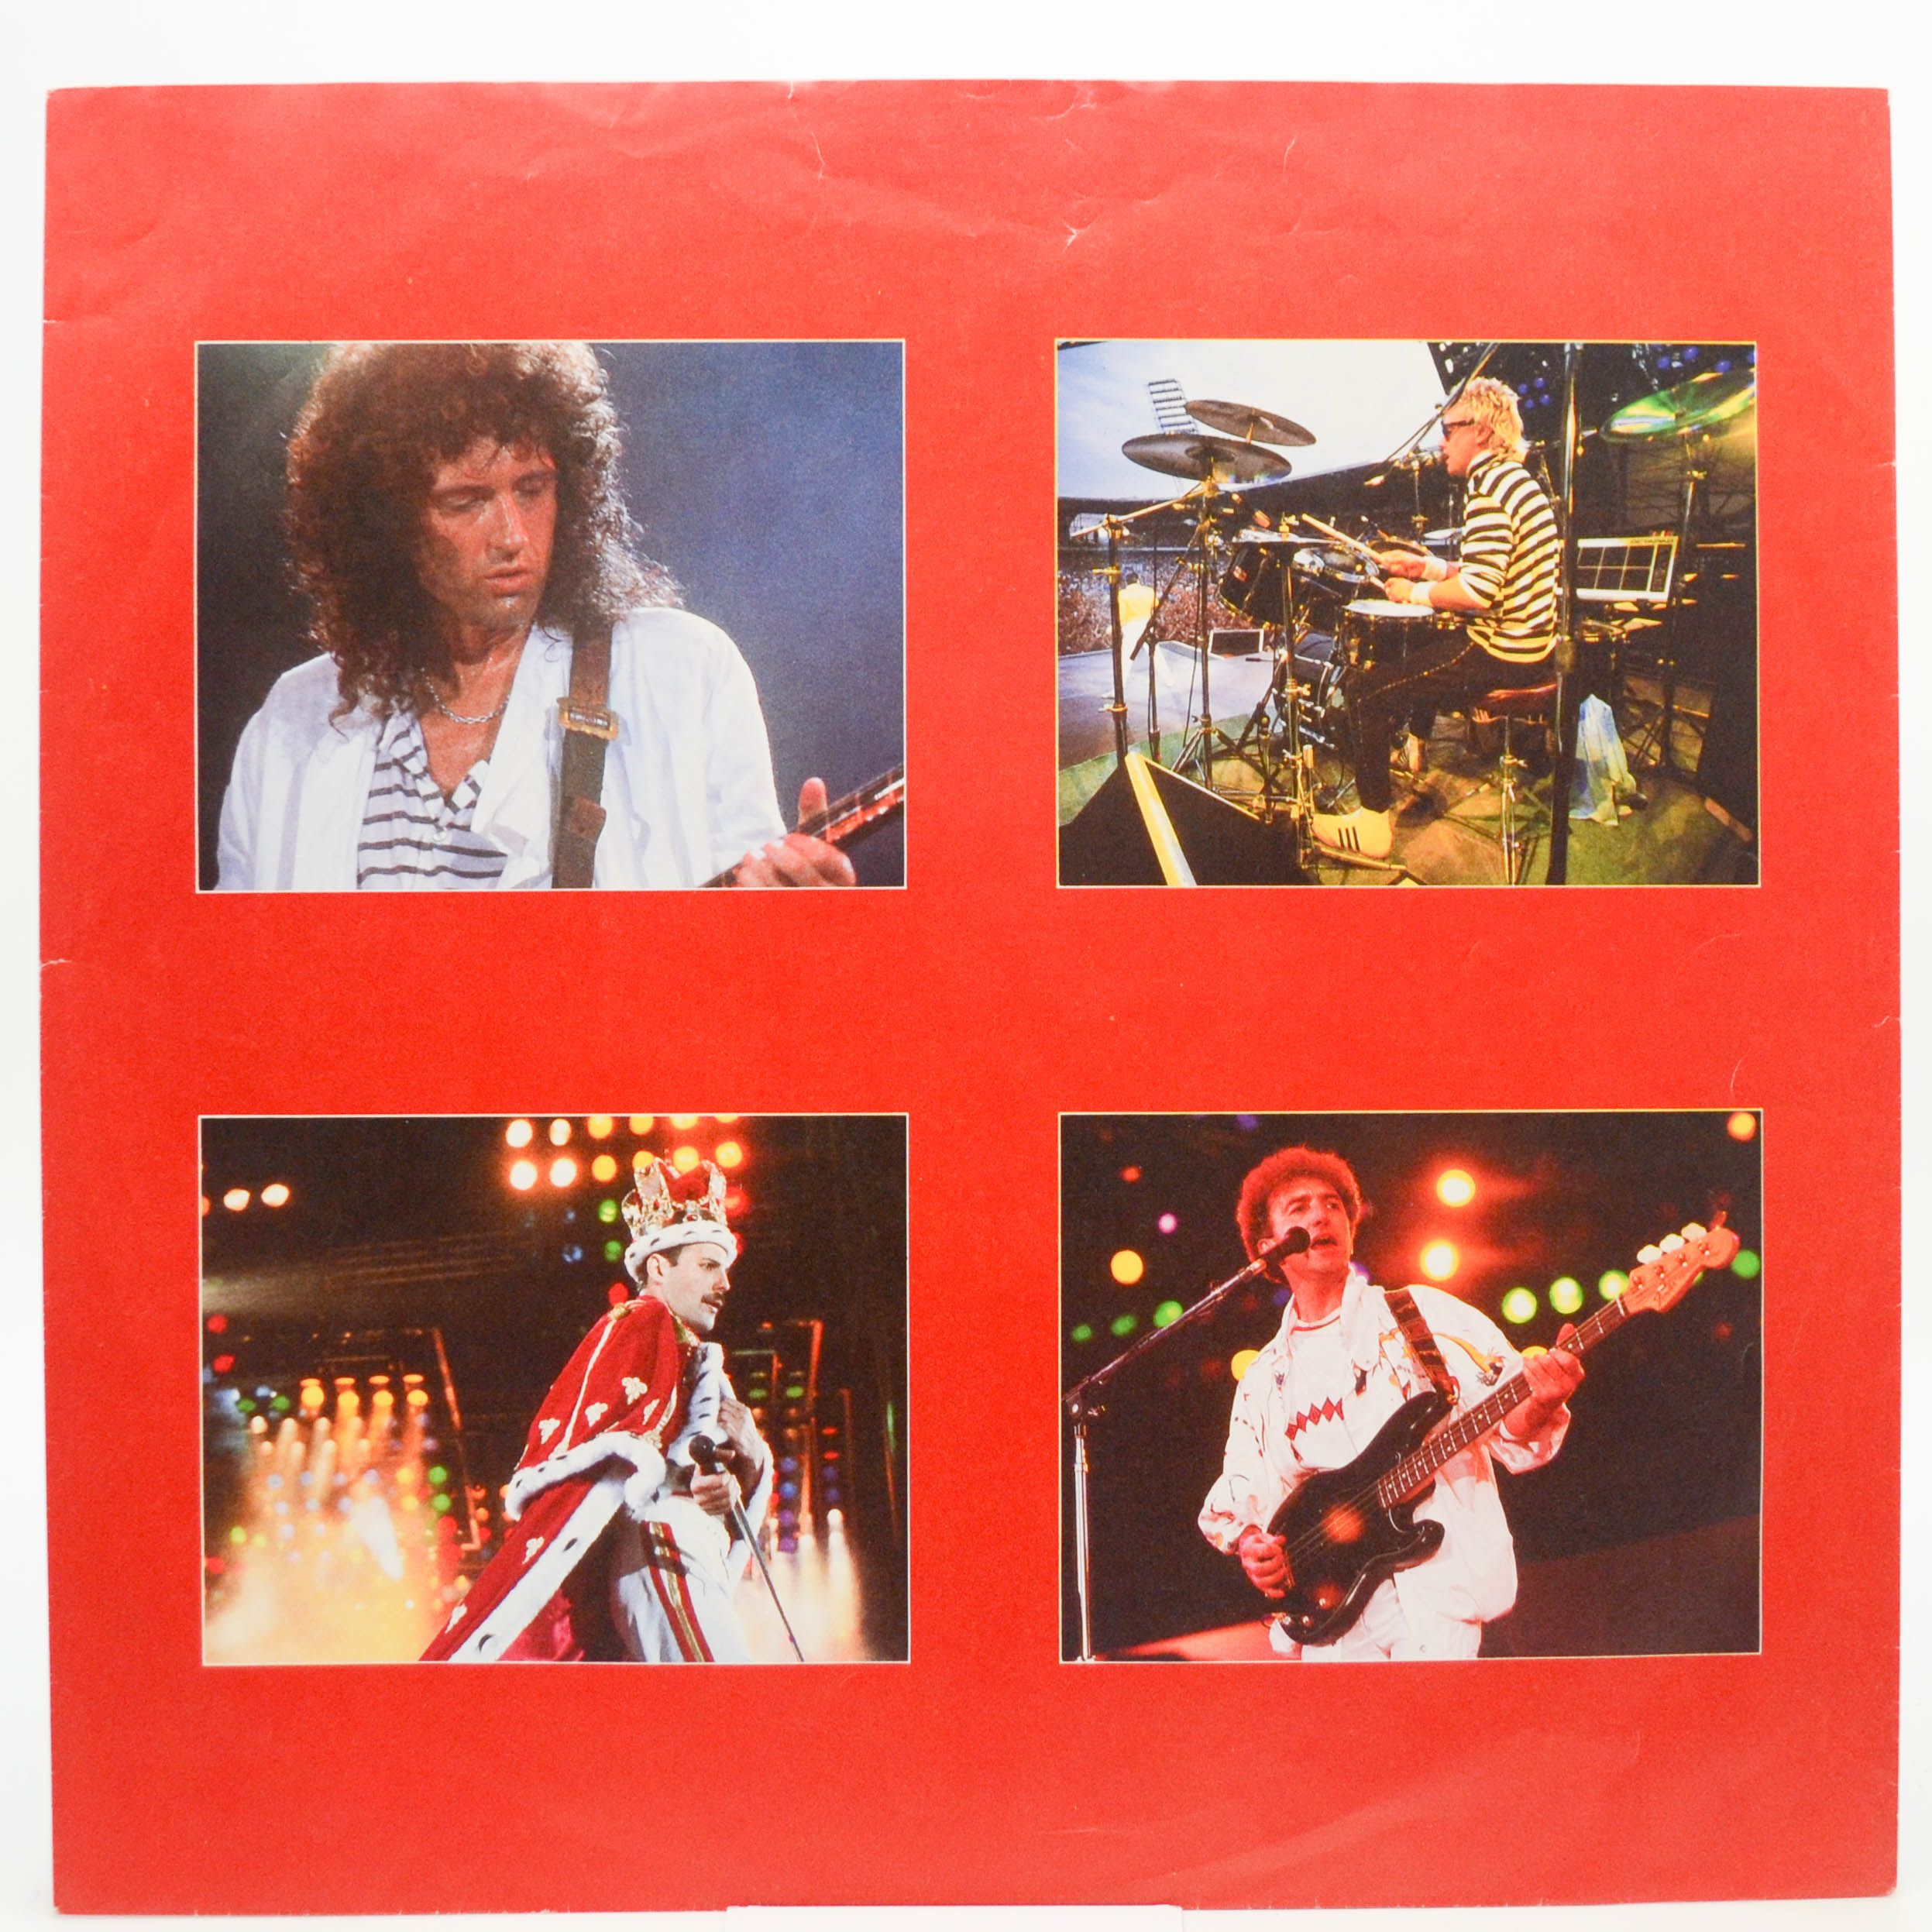 Queen — Live Magic, 1986